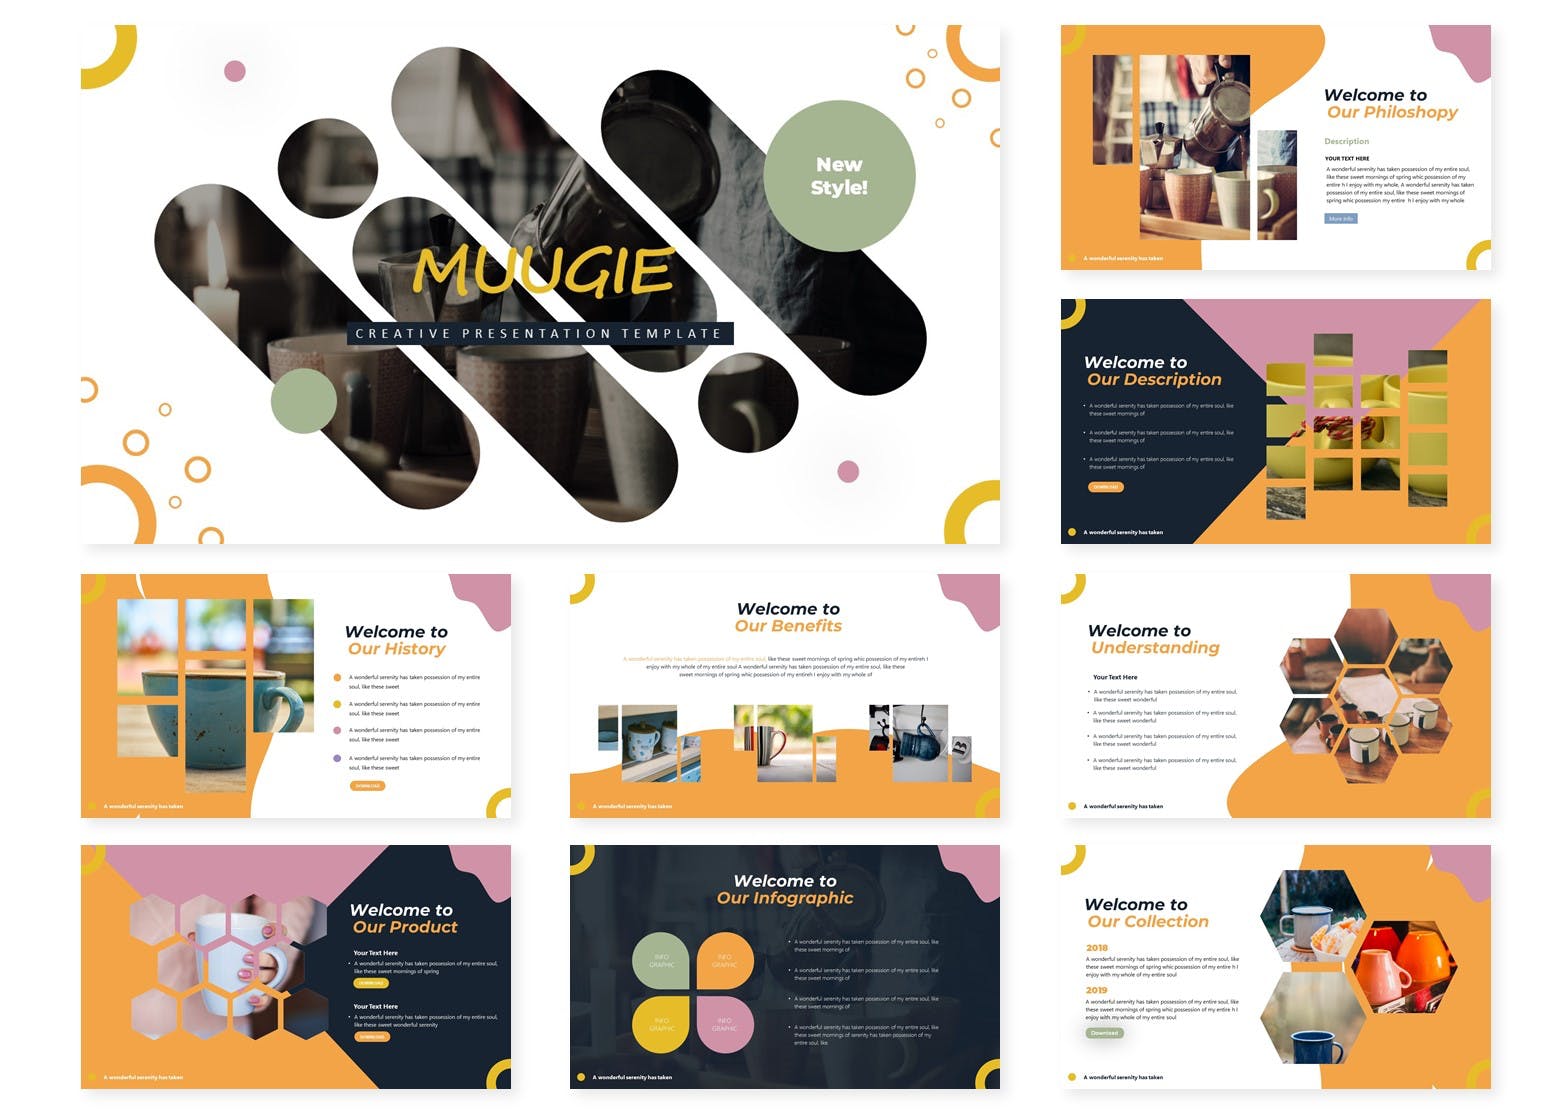 咖啡/咖啡厅品牌宣传&咖啡培训课程PPT幻灯片模板 Muugie | Powerpoint Template插图(1)